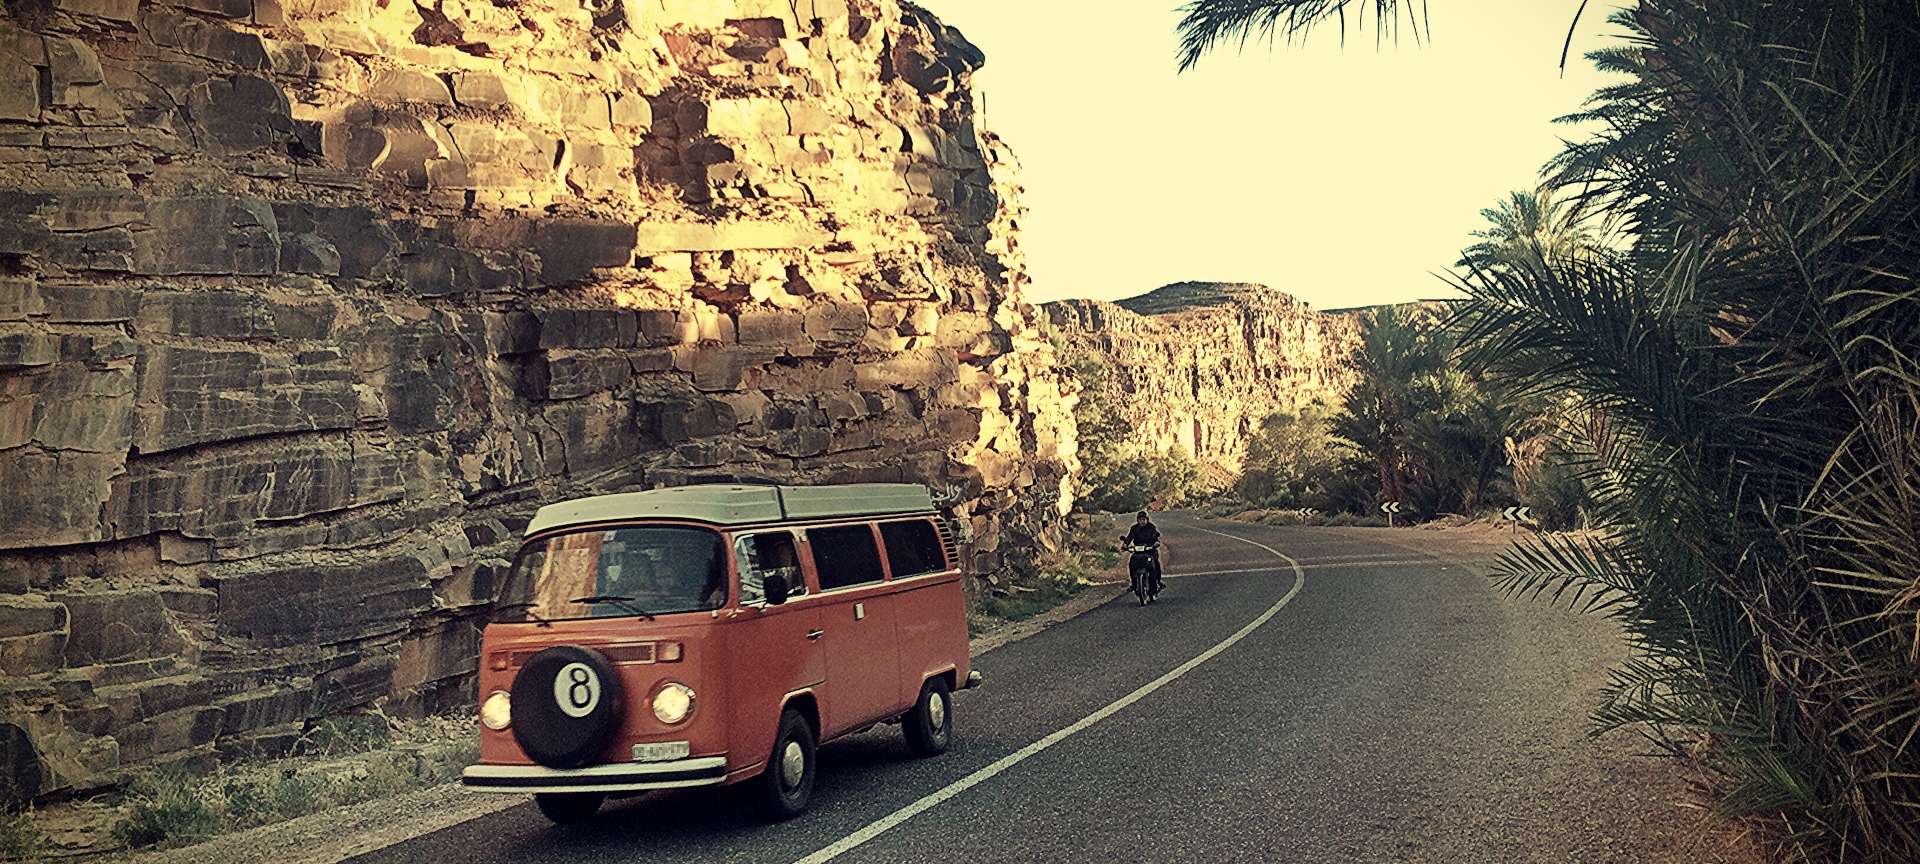 Combi VW orange aventure en Afrique sur route entre rochers et palmiers